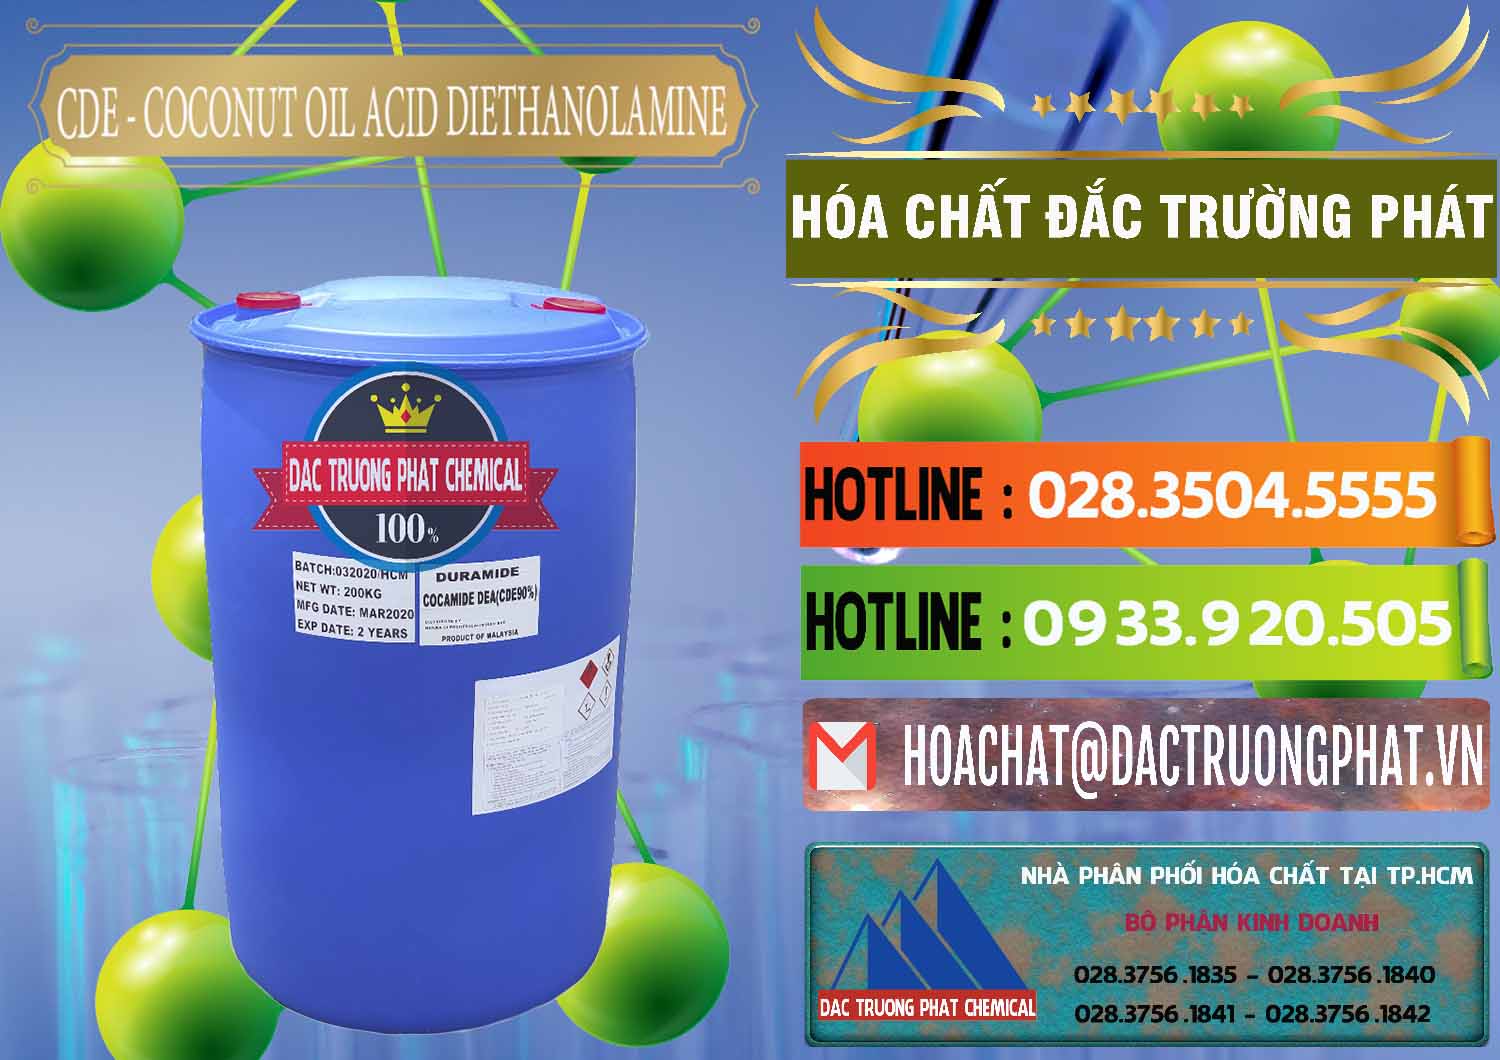 Nhà cung cấp & bán CDE - Coconut Oil Acid Diethanolamine Mã Lai Malaysia - 0311 - Nơi chuyên bán - phân phối hóa chất tại TP.HCM - cungcaphoachat.com.vn